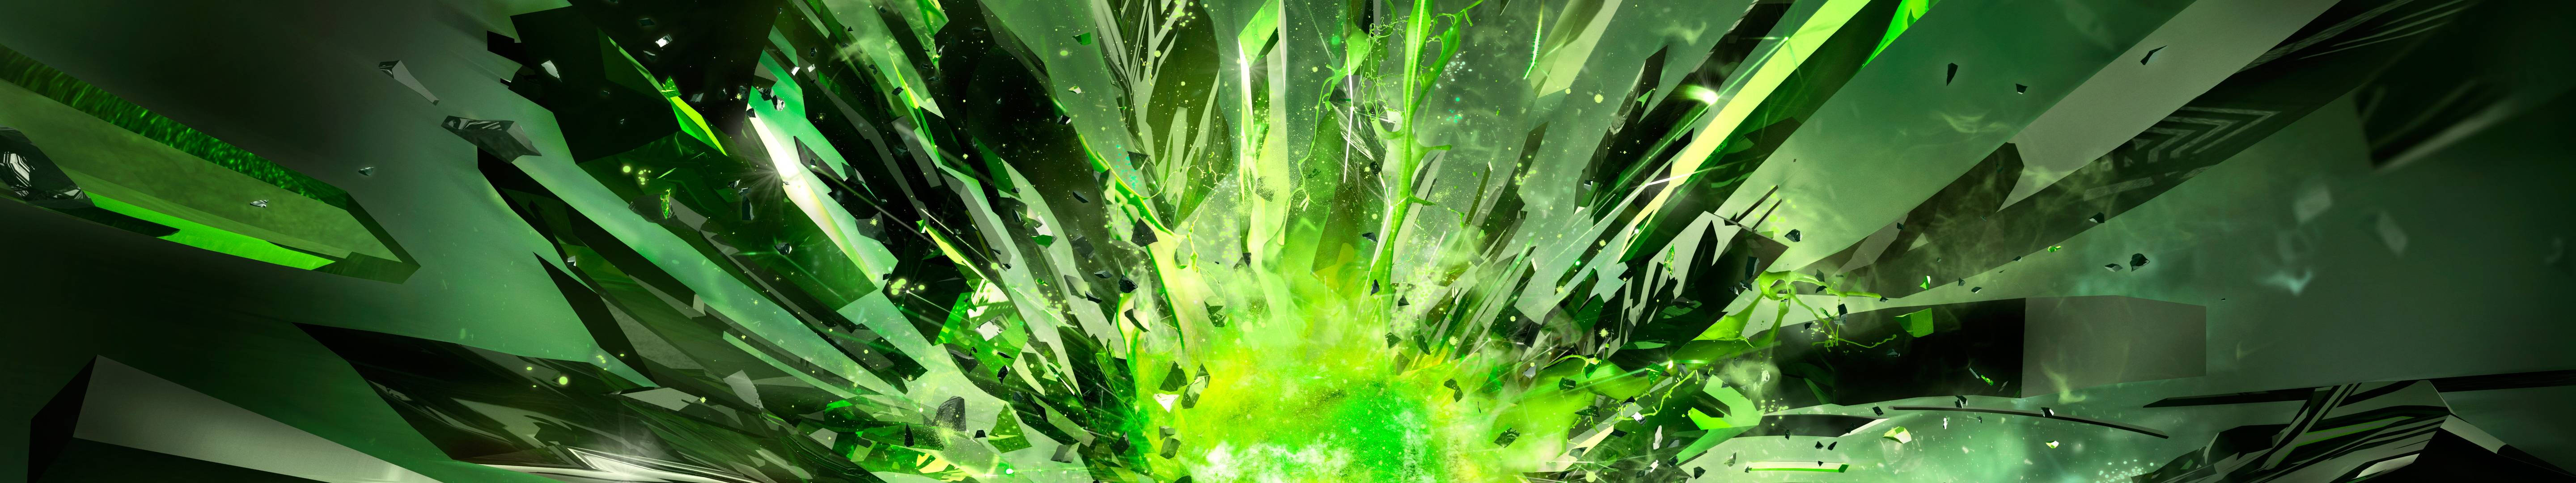 Green Crystals Explosion Wallpaper